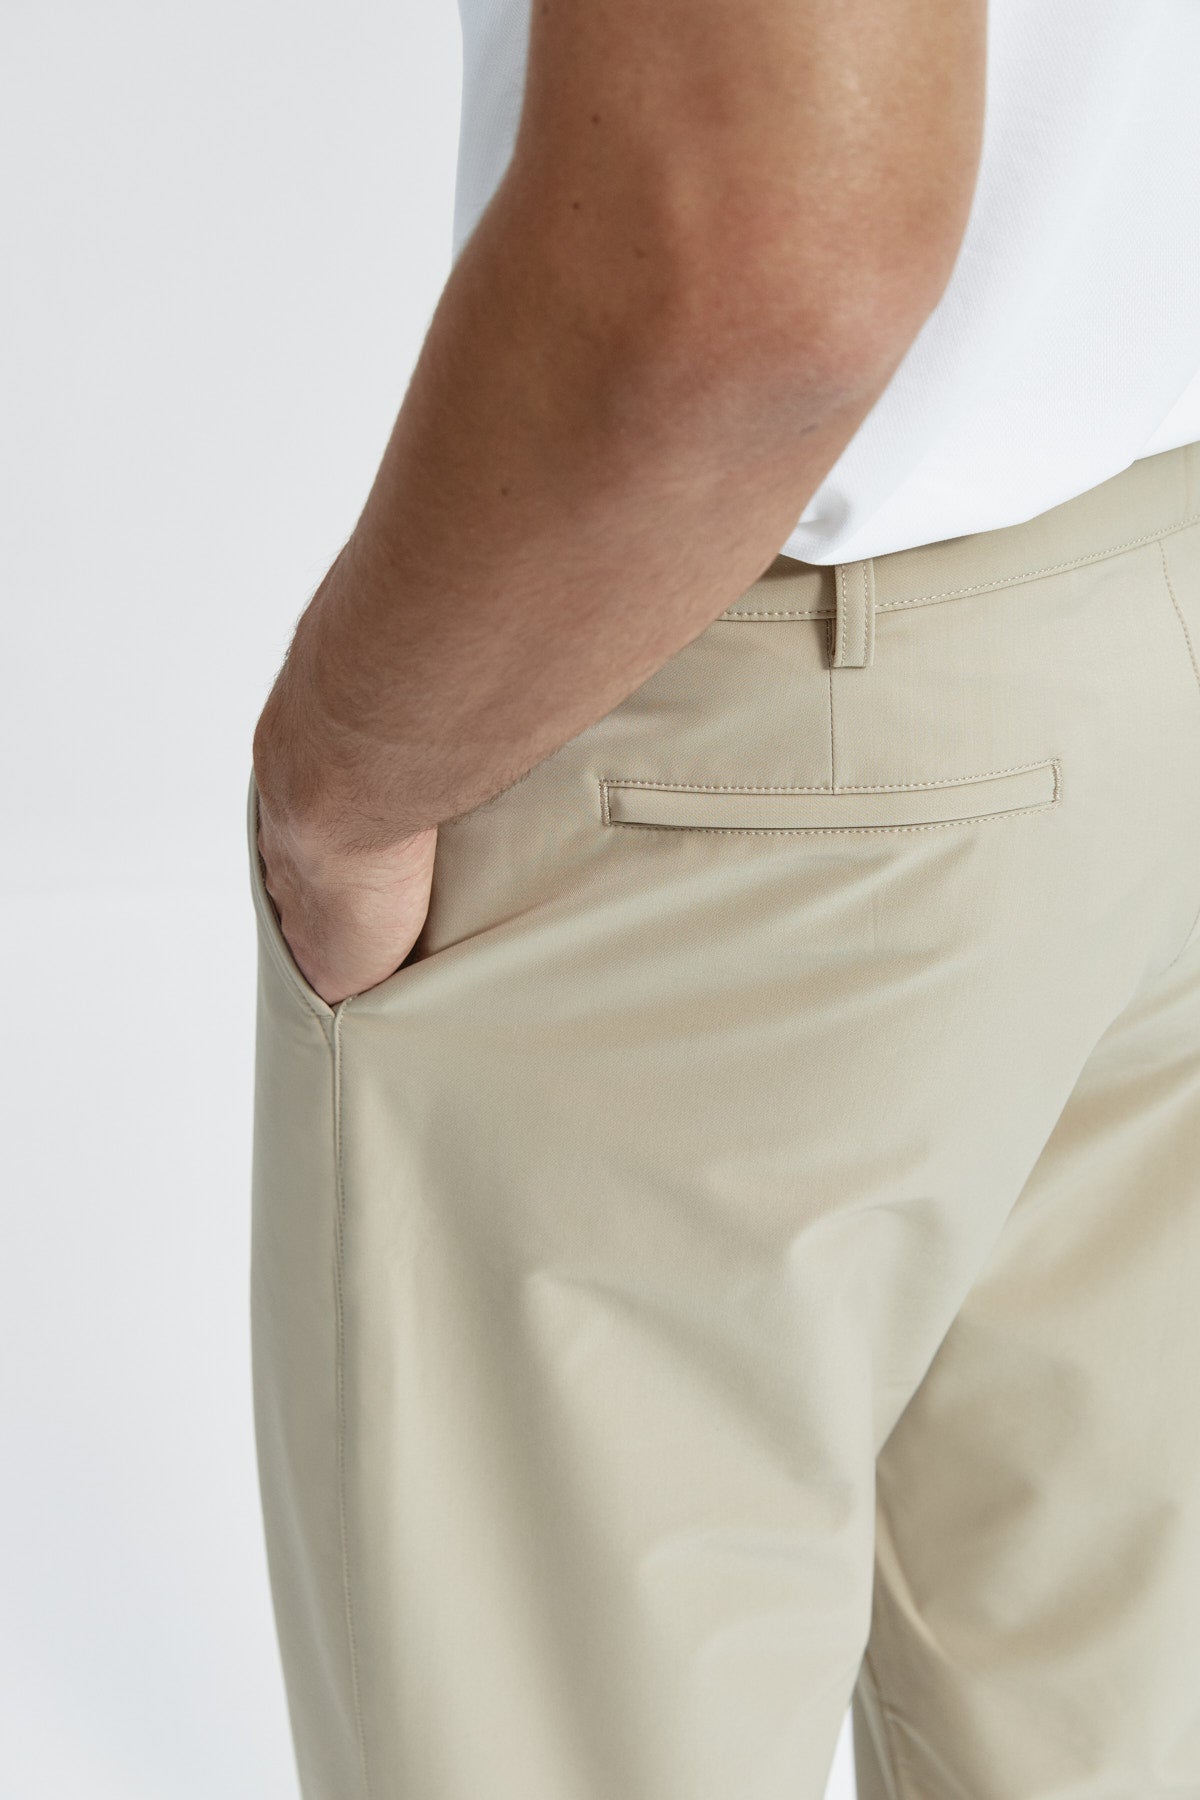 Pantalón chino regular beige para hombre con tecnología termorreguladora Coolmax. Foto detalle